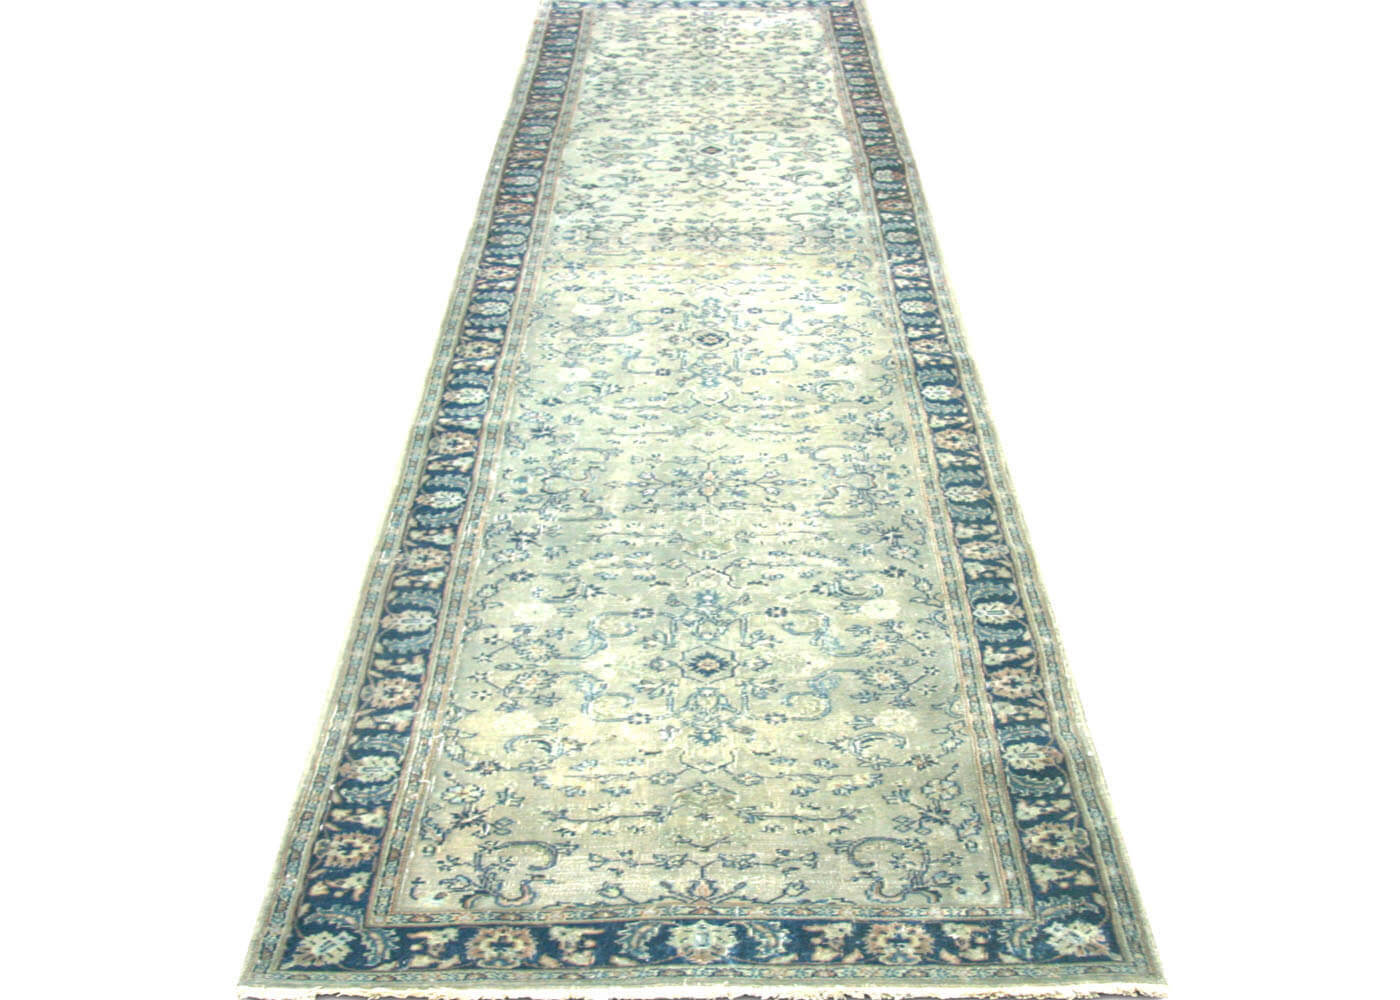 Semi Antique Persian Tabriz Runner - 2'8" x 12'7"